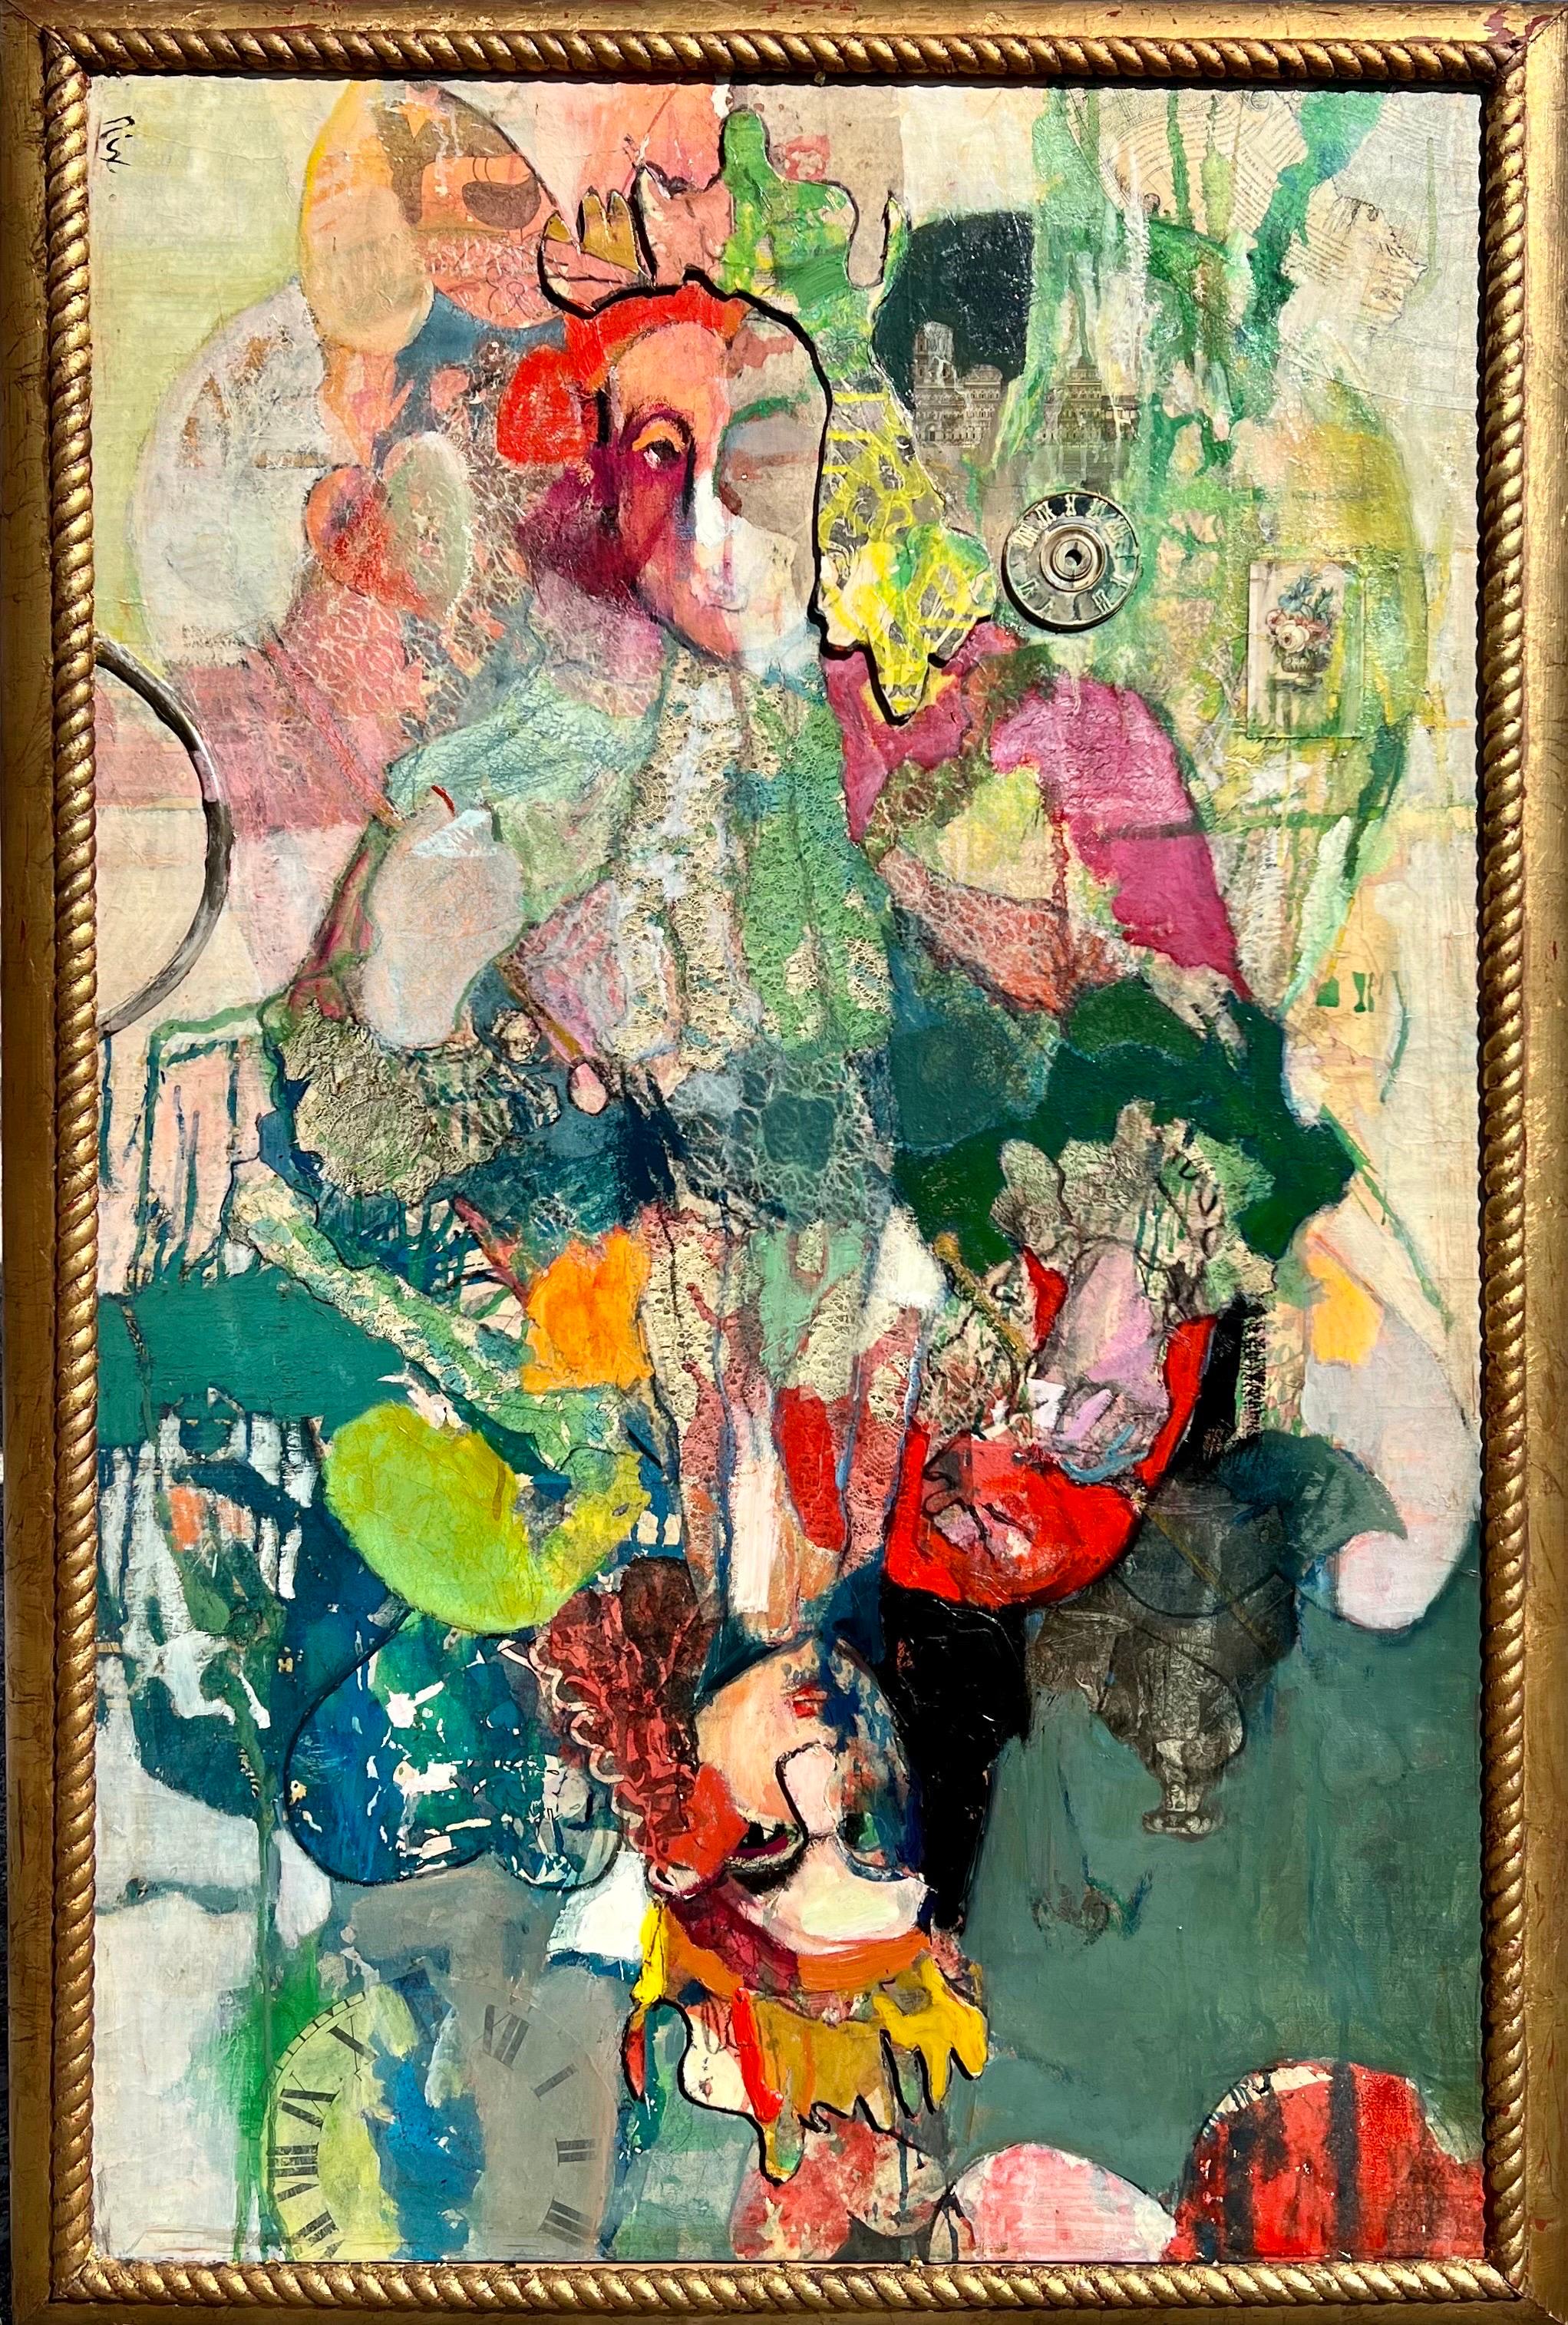 Patricia Nix, 
Gemälde mit Öl auf Leinwand und Collage, recto signiert
1984
Verso betitelt "Queen of Hearts" und vollständig signiert.
Gerahmte Größe misst etwa 55 x 37.  Leinwand ist 50,5 X 32,5
Diese stammen aus einer berühmten Serie, die sie auf